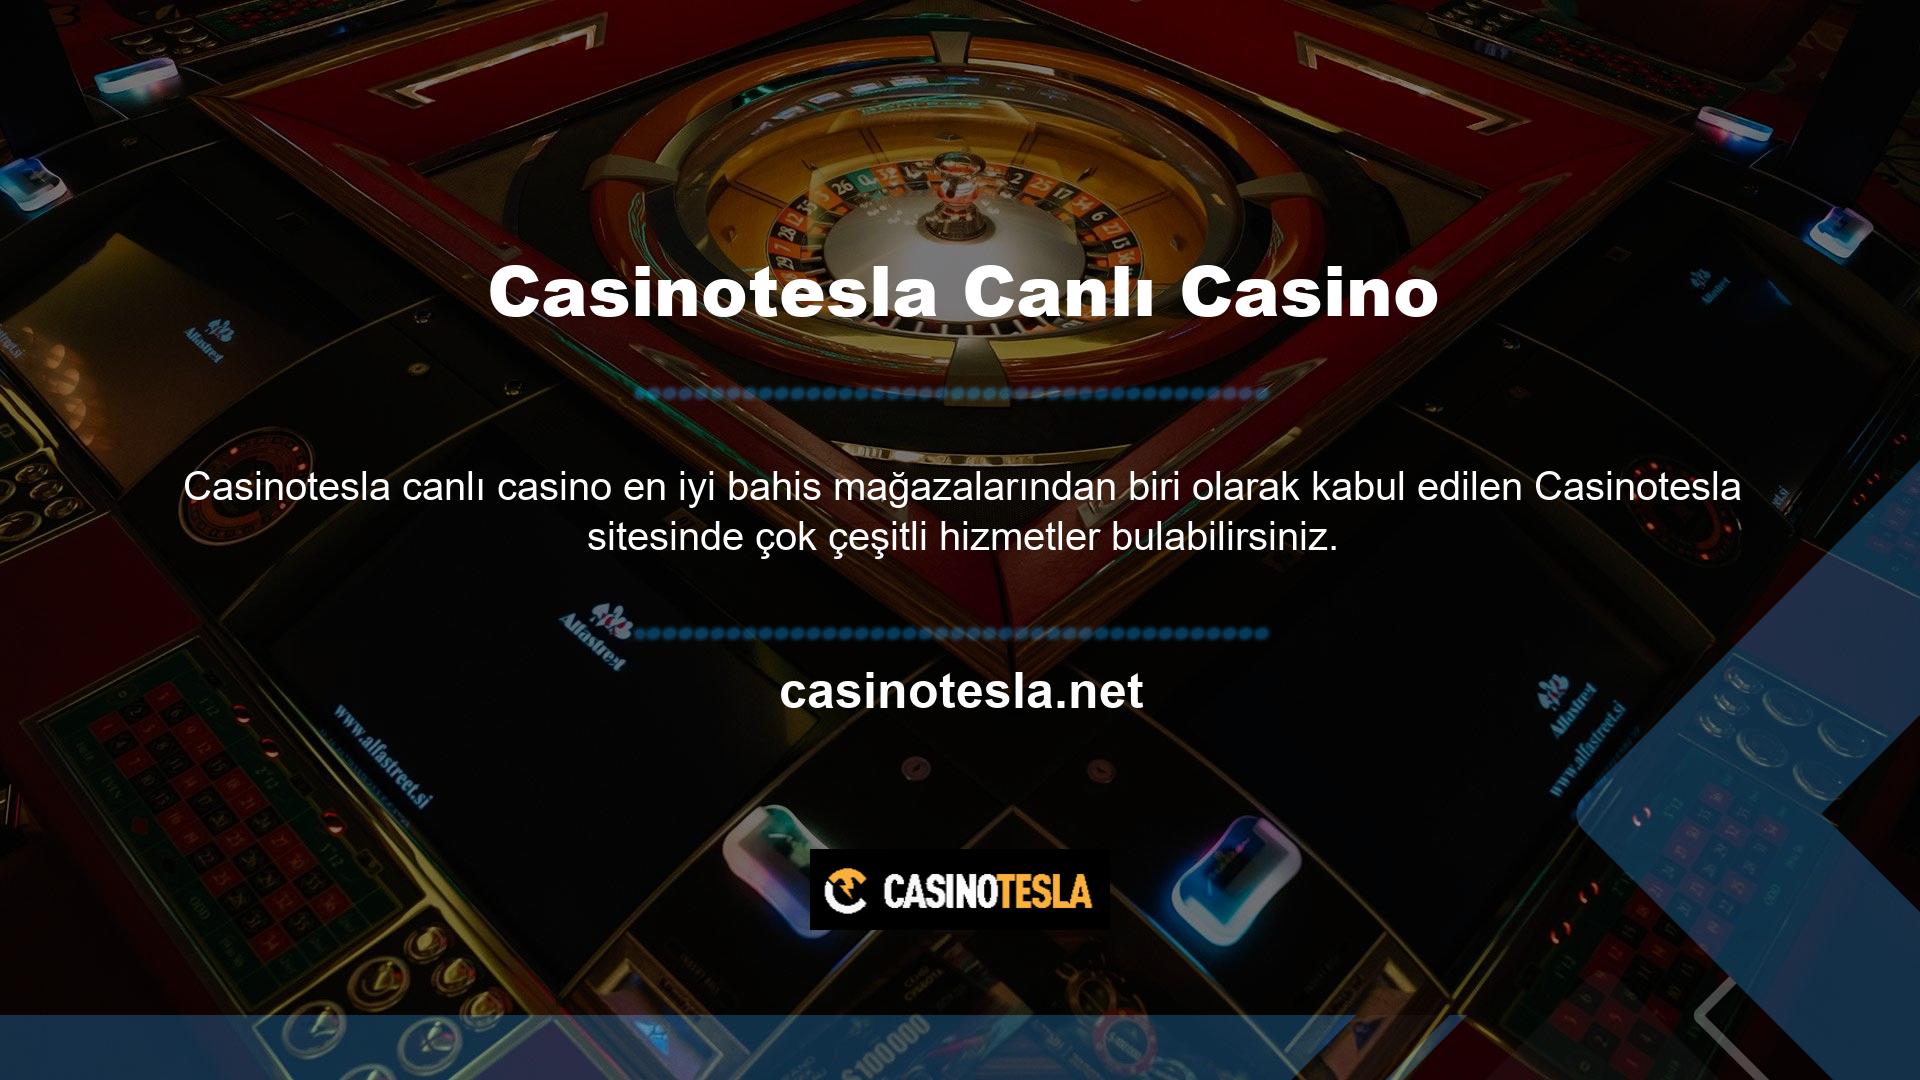 Web sitesi, canlı bahis, bahisçiler, casinolar ve canlı casino bahis seçenekleri dahil olmak üzere bir dizi hizmet sunmaktadır